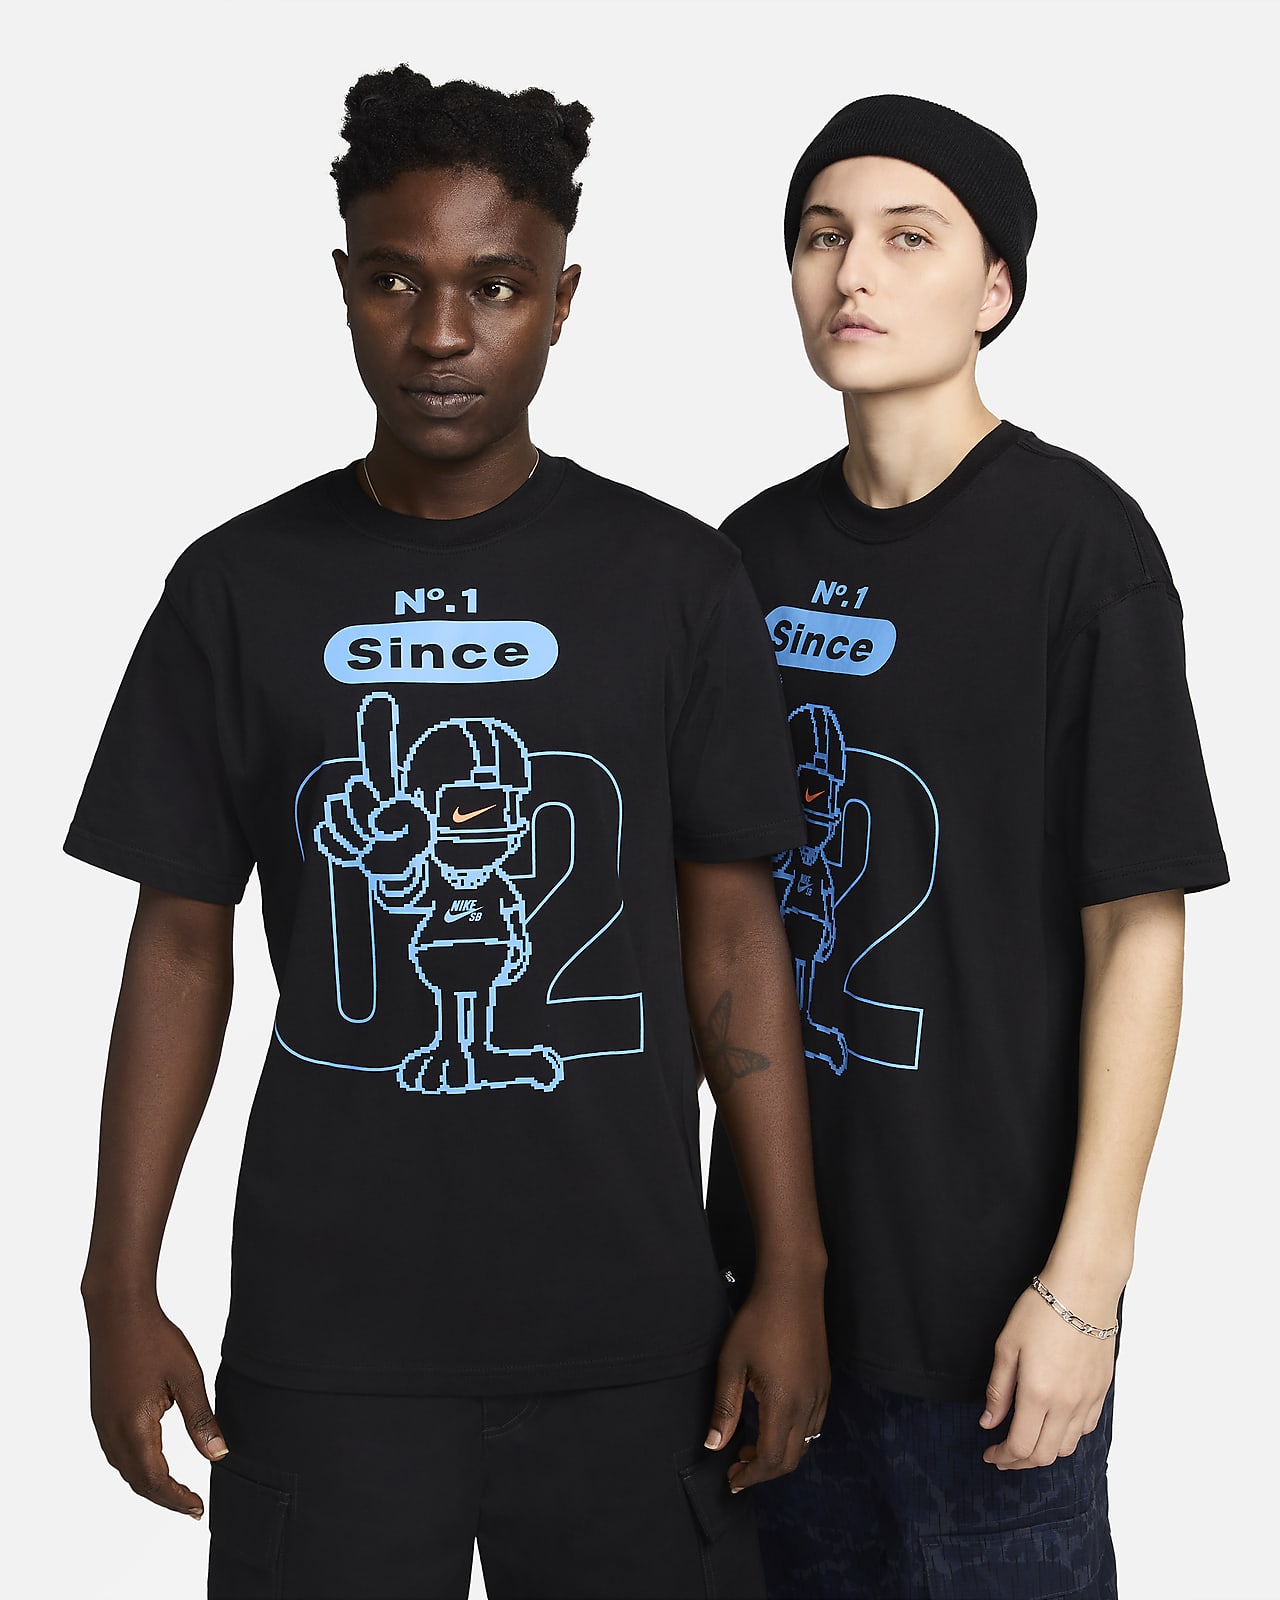 Nike SB-skate-T-shirt